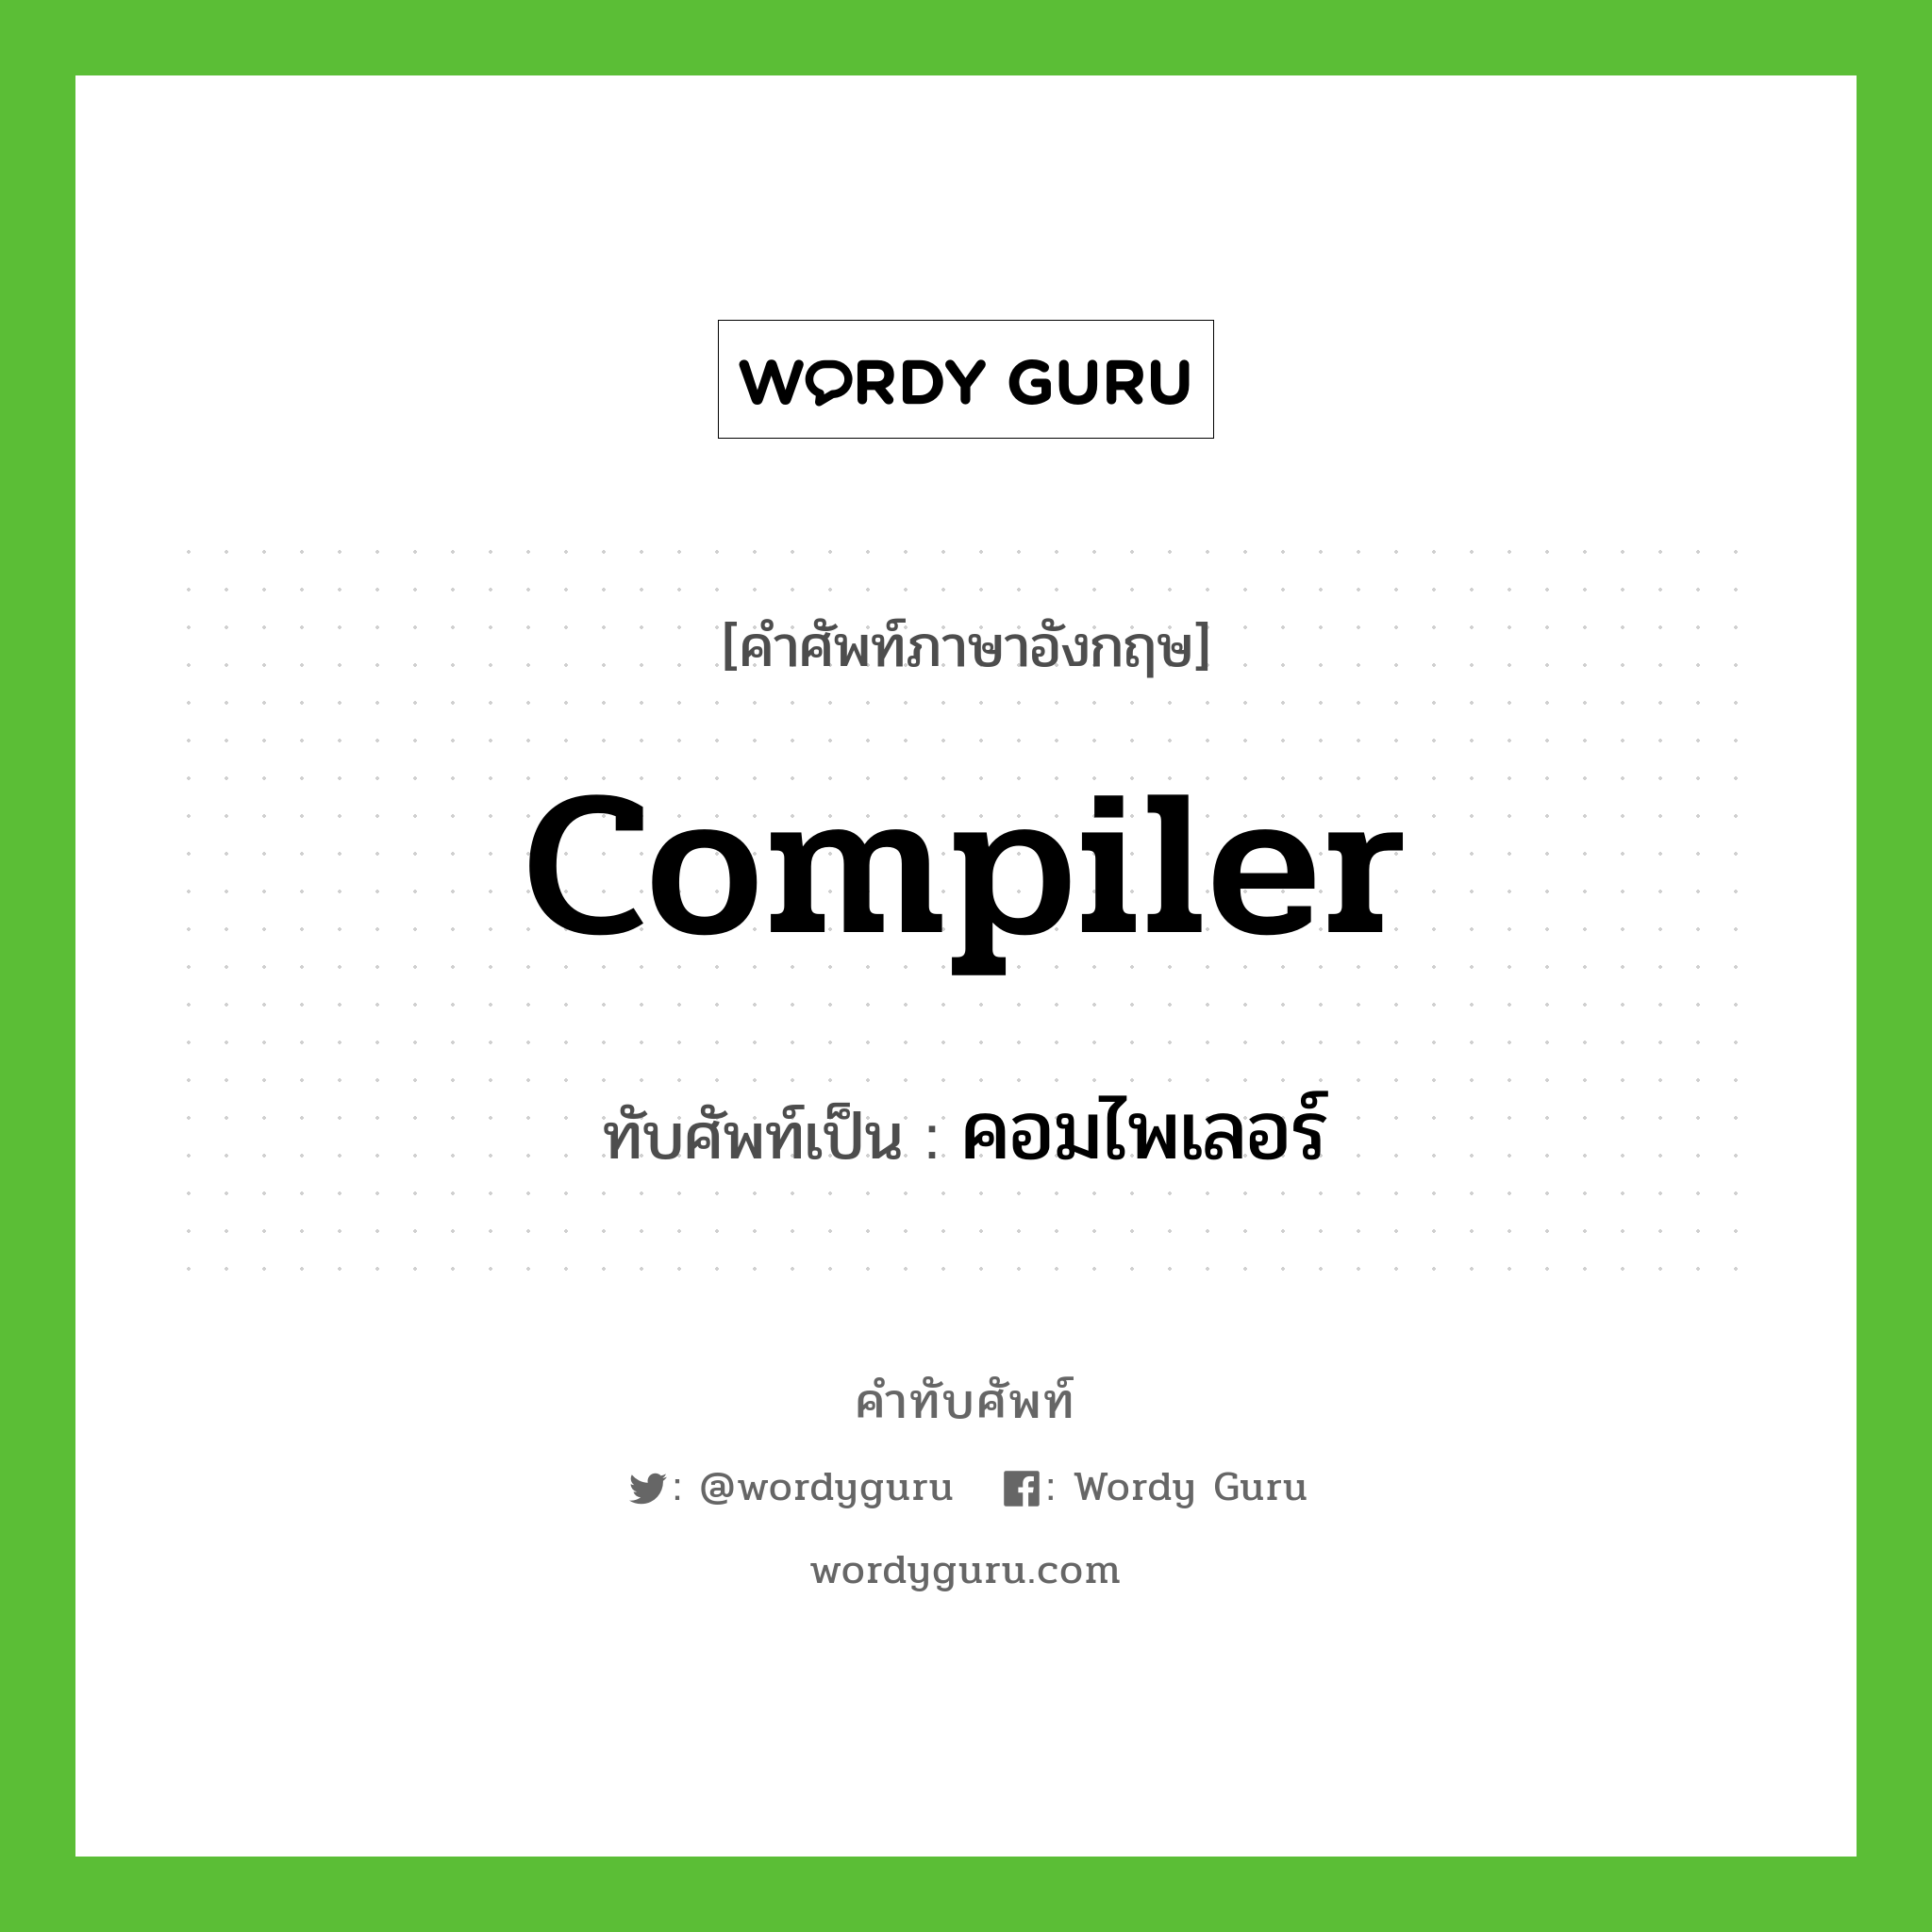 compiler เขียนเป็นคำไทยว่าอะไร?, คำศัพท์ภาษาอังกฤษ compiler ทับศัพท์เป็น คอมไพเลอร์